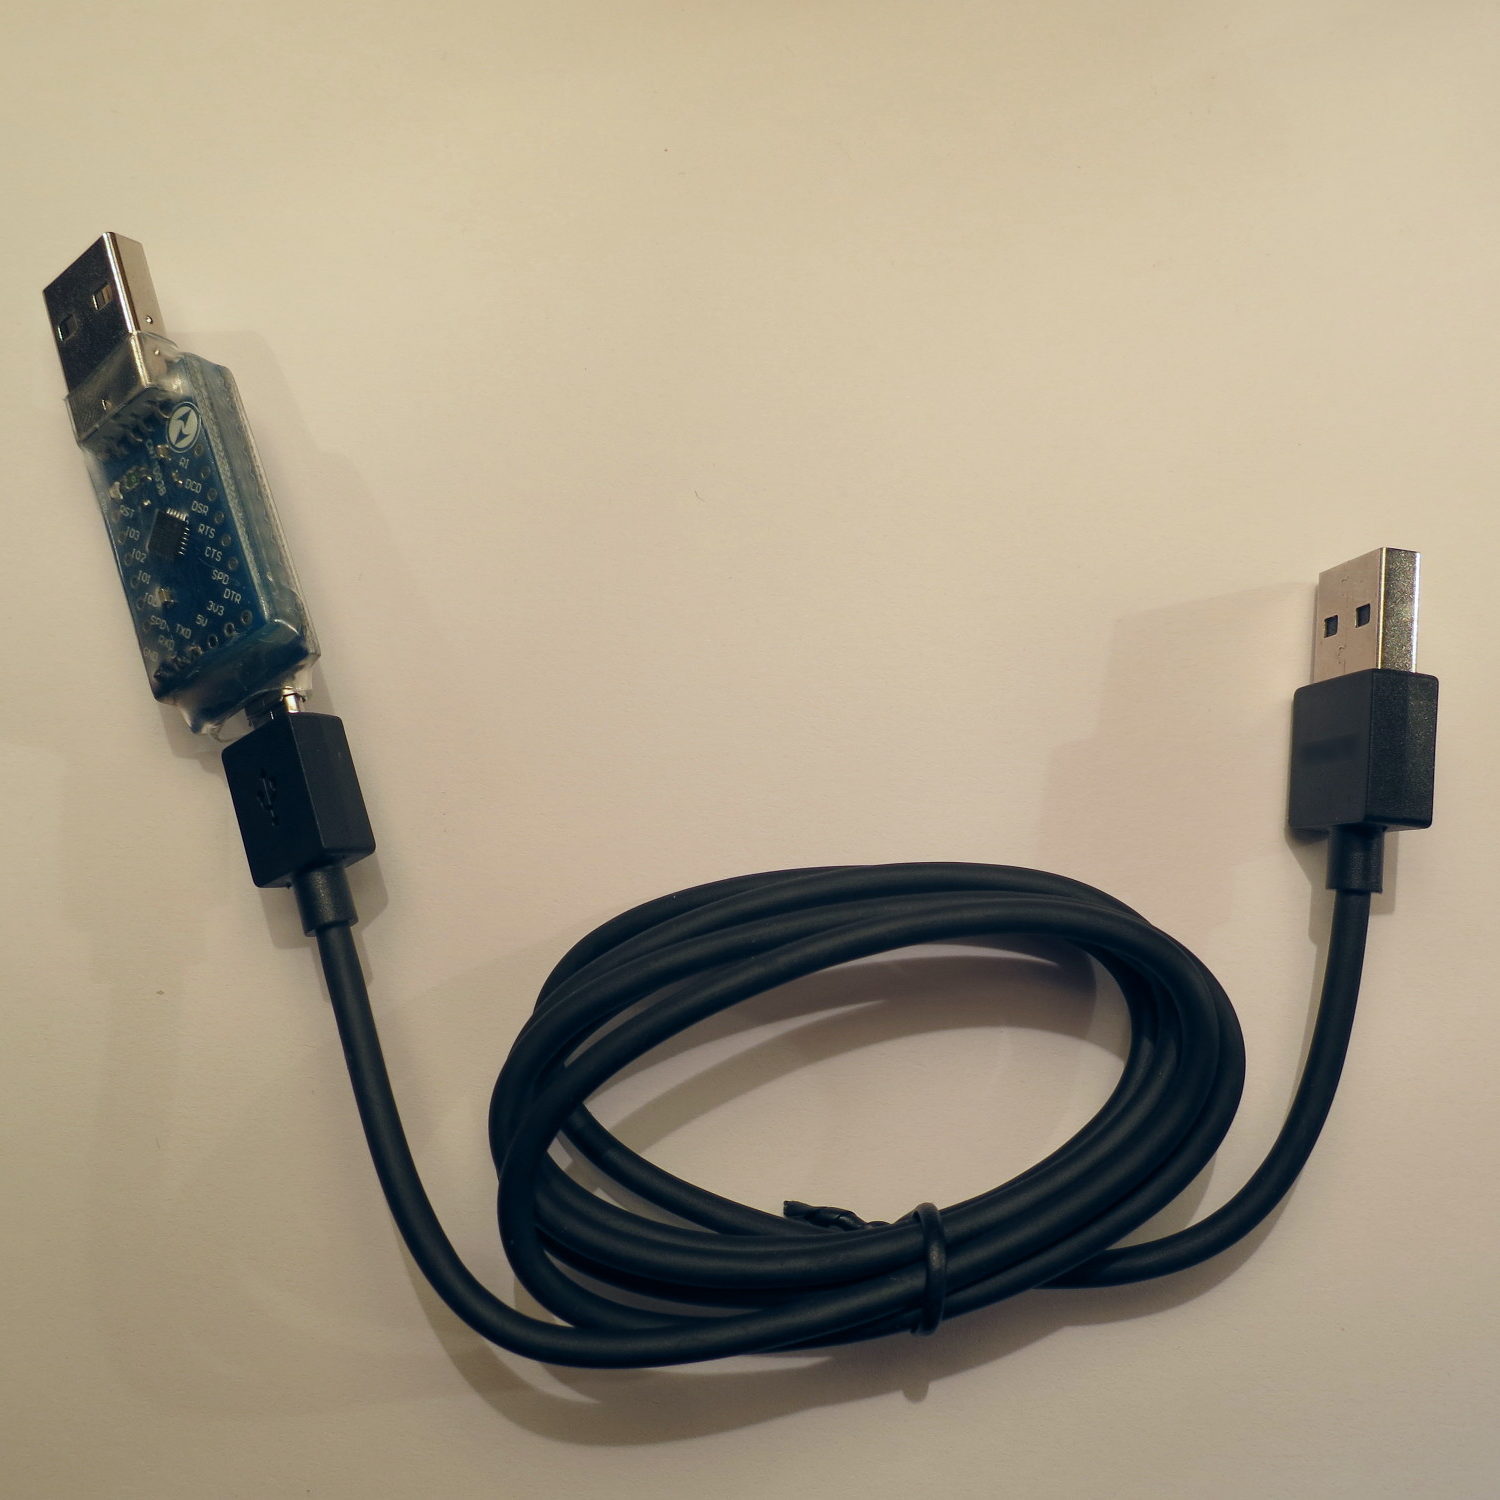 GIMX USB WHEEL ADAPTER - Logitech G27, G25, DFGT on PS4